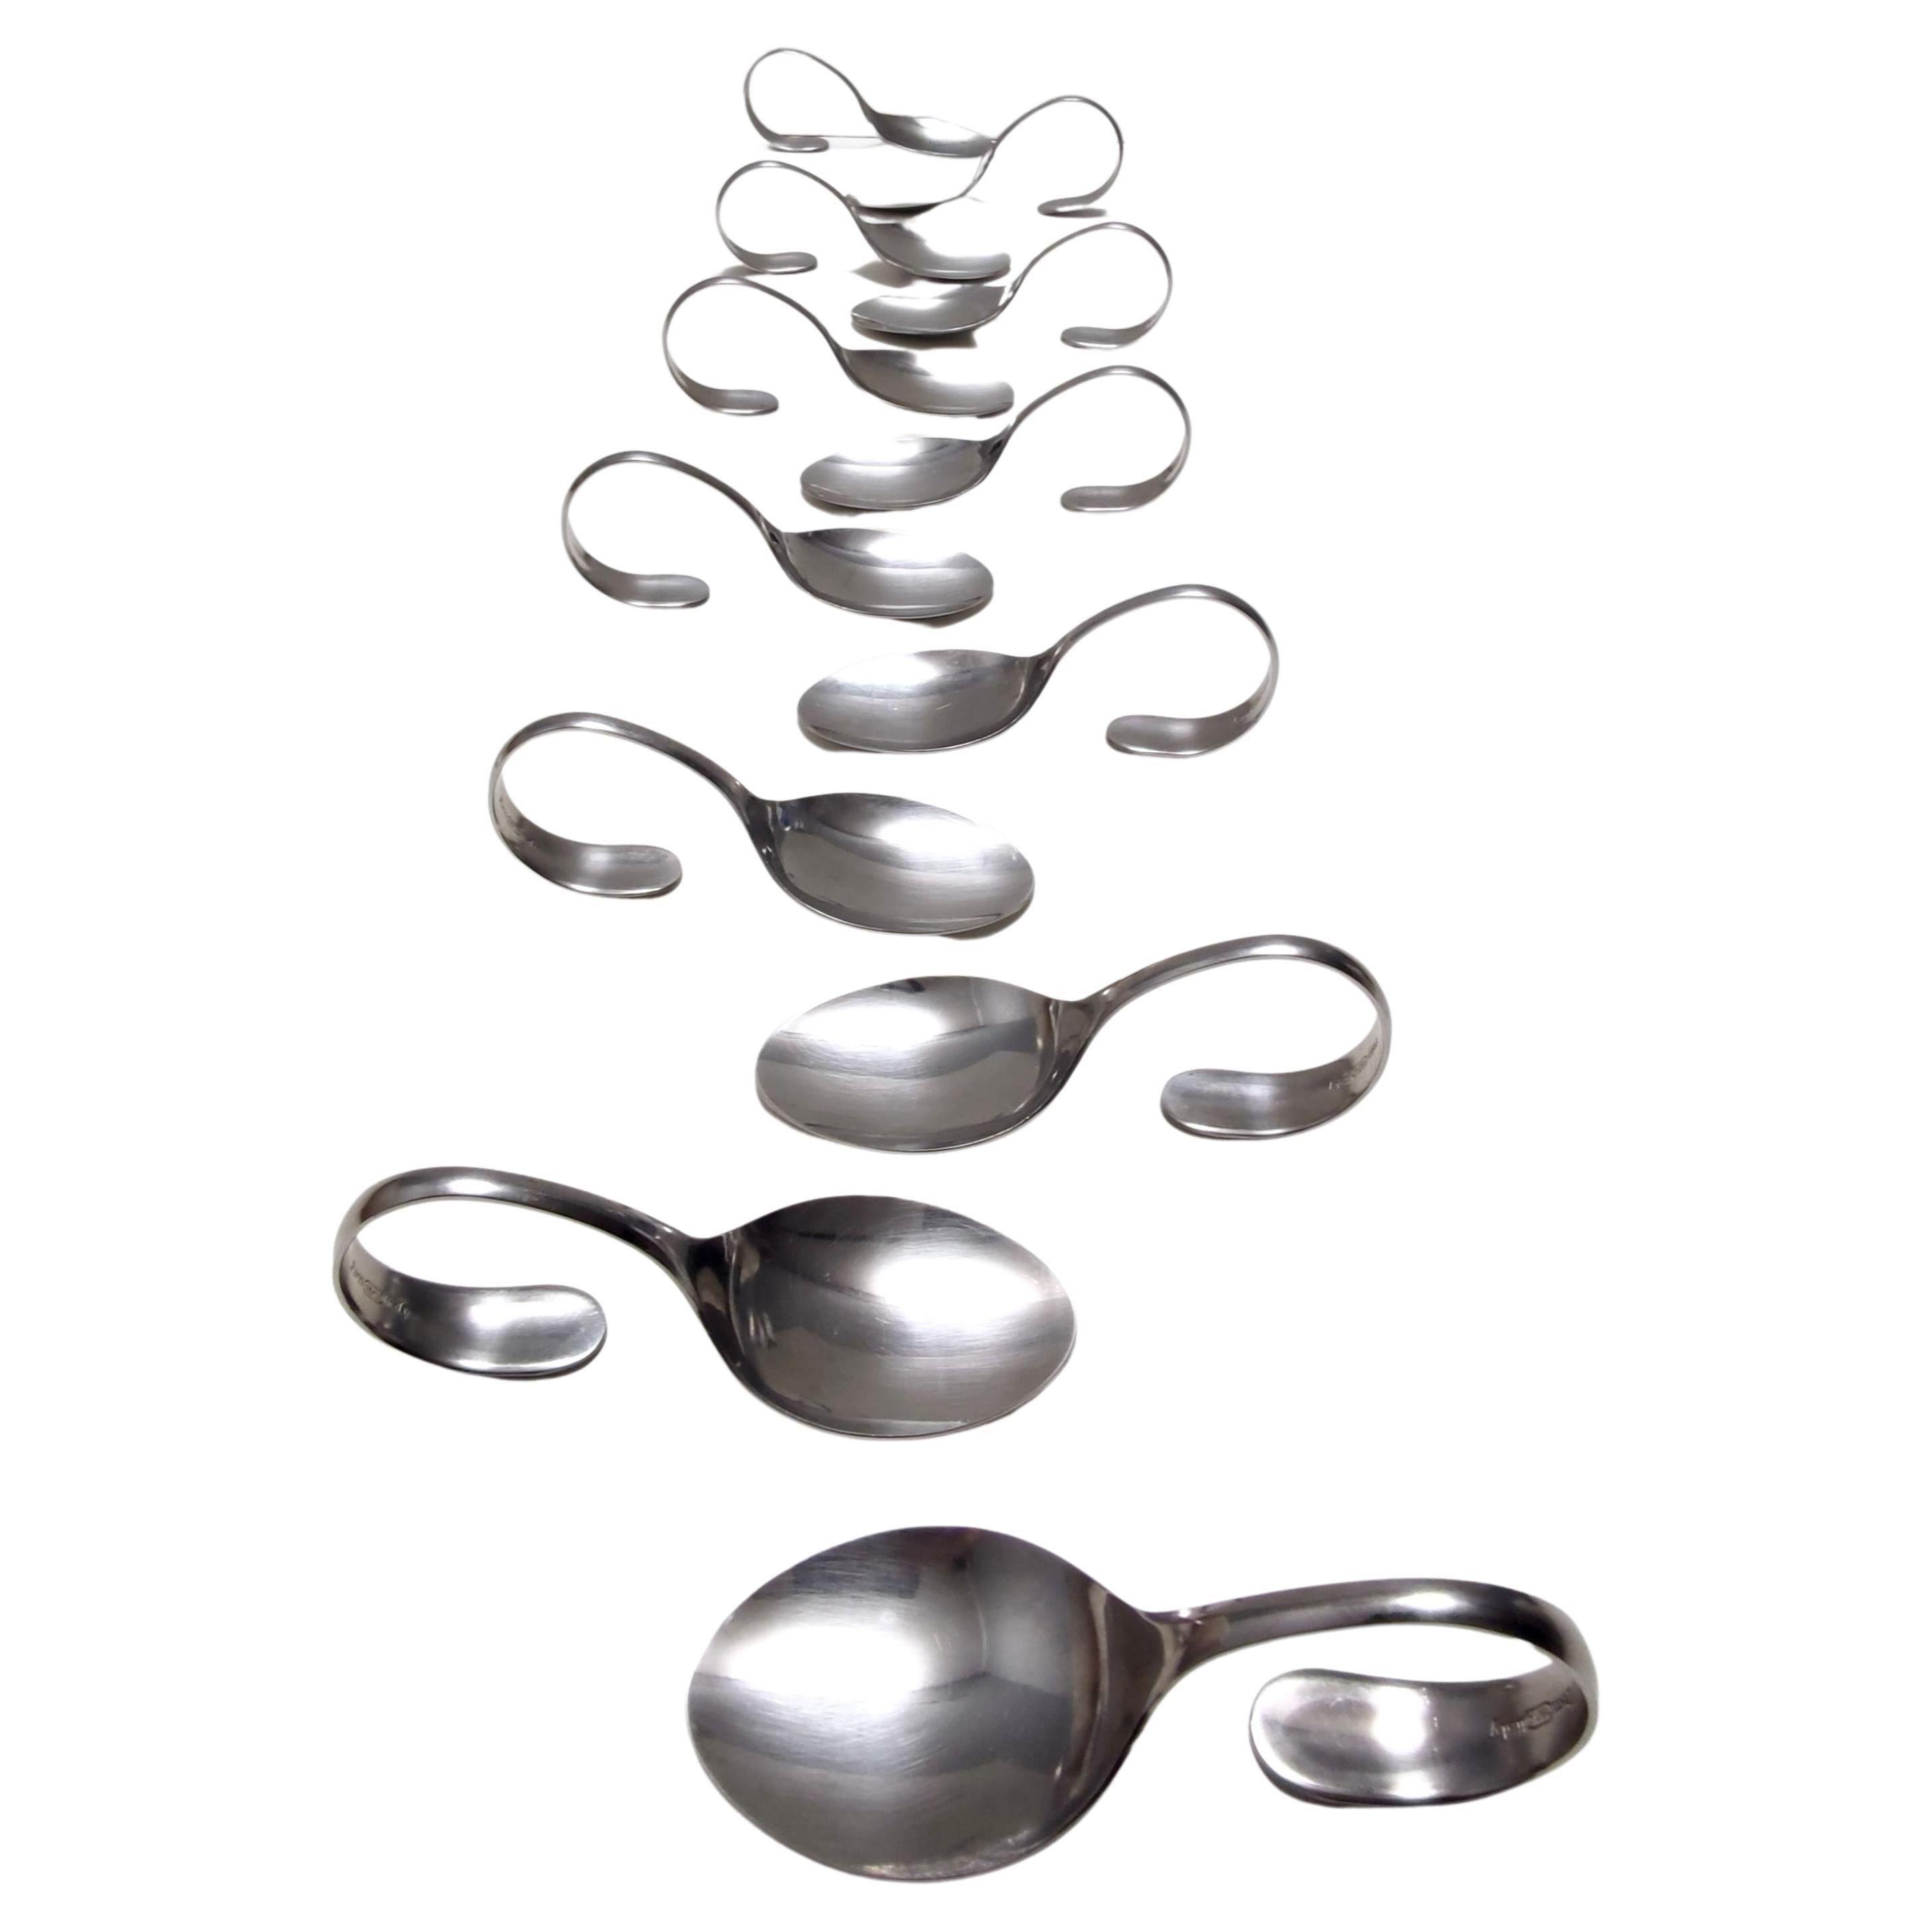 Postmodern Set of Twelve Steel Serving Spoon by Pinti, Italy, 1980s